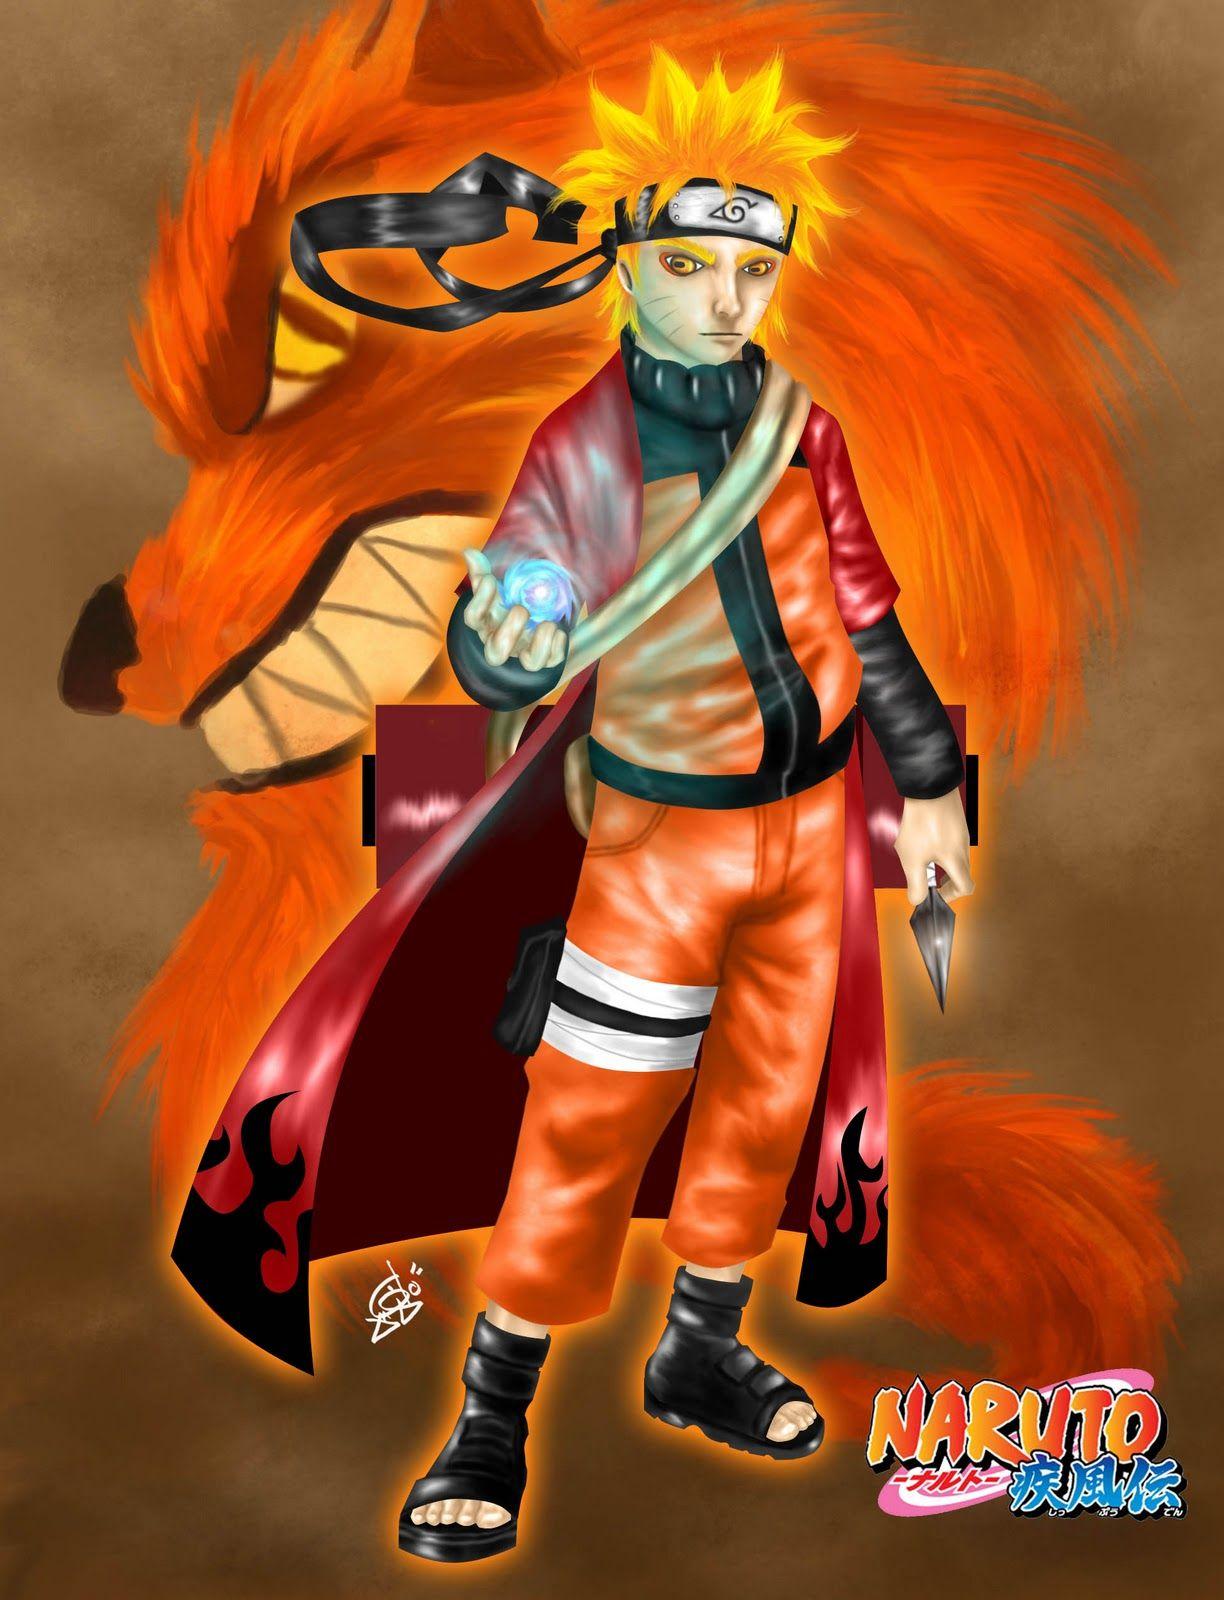 Naruto sage mode wallpaper